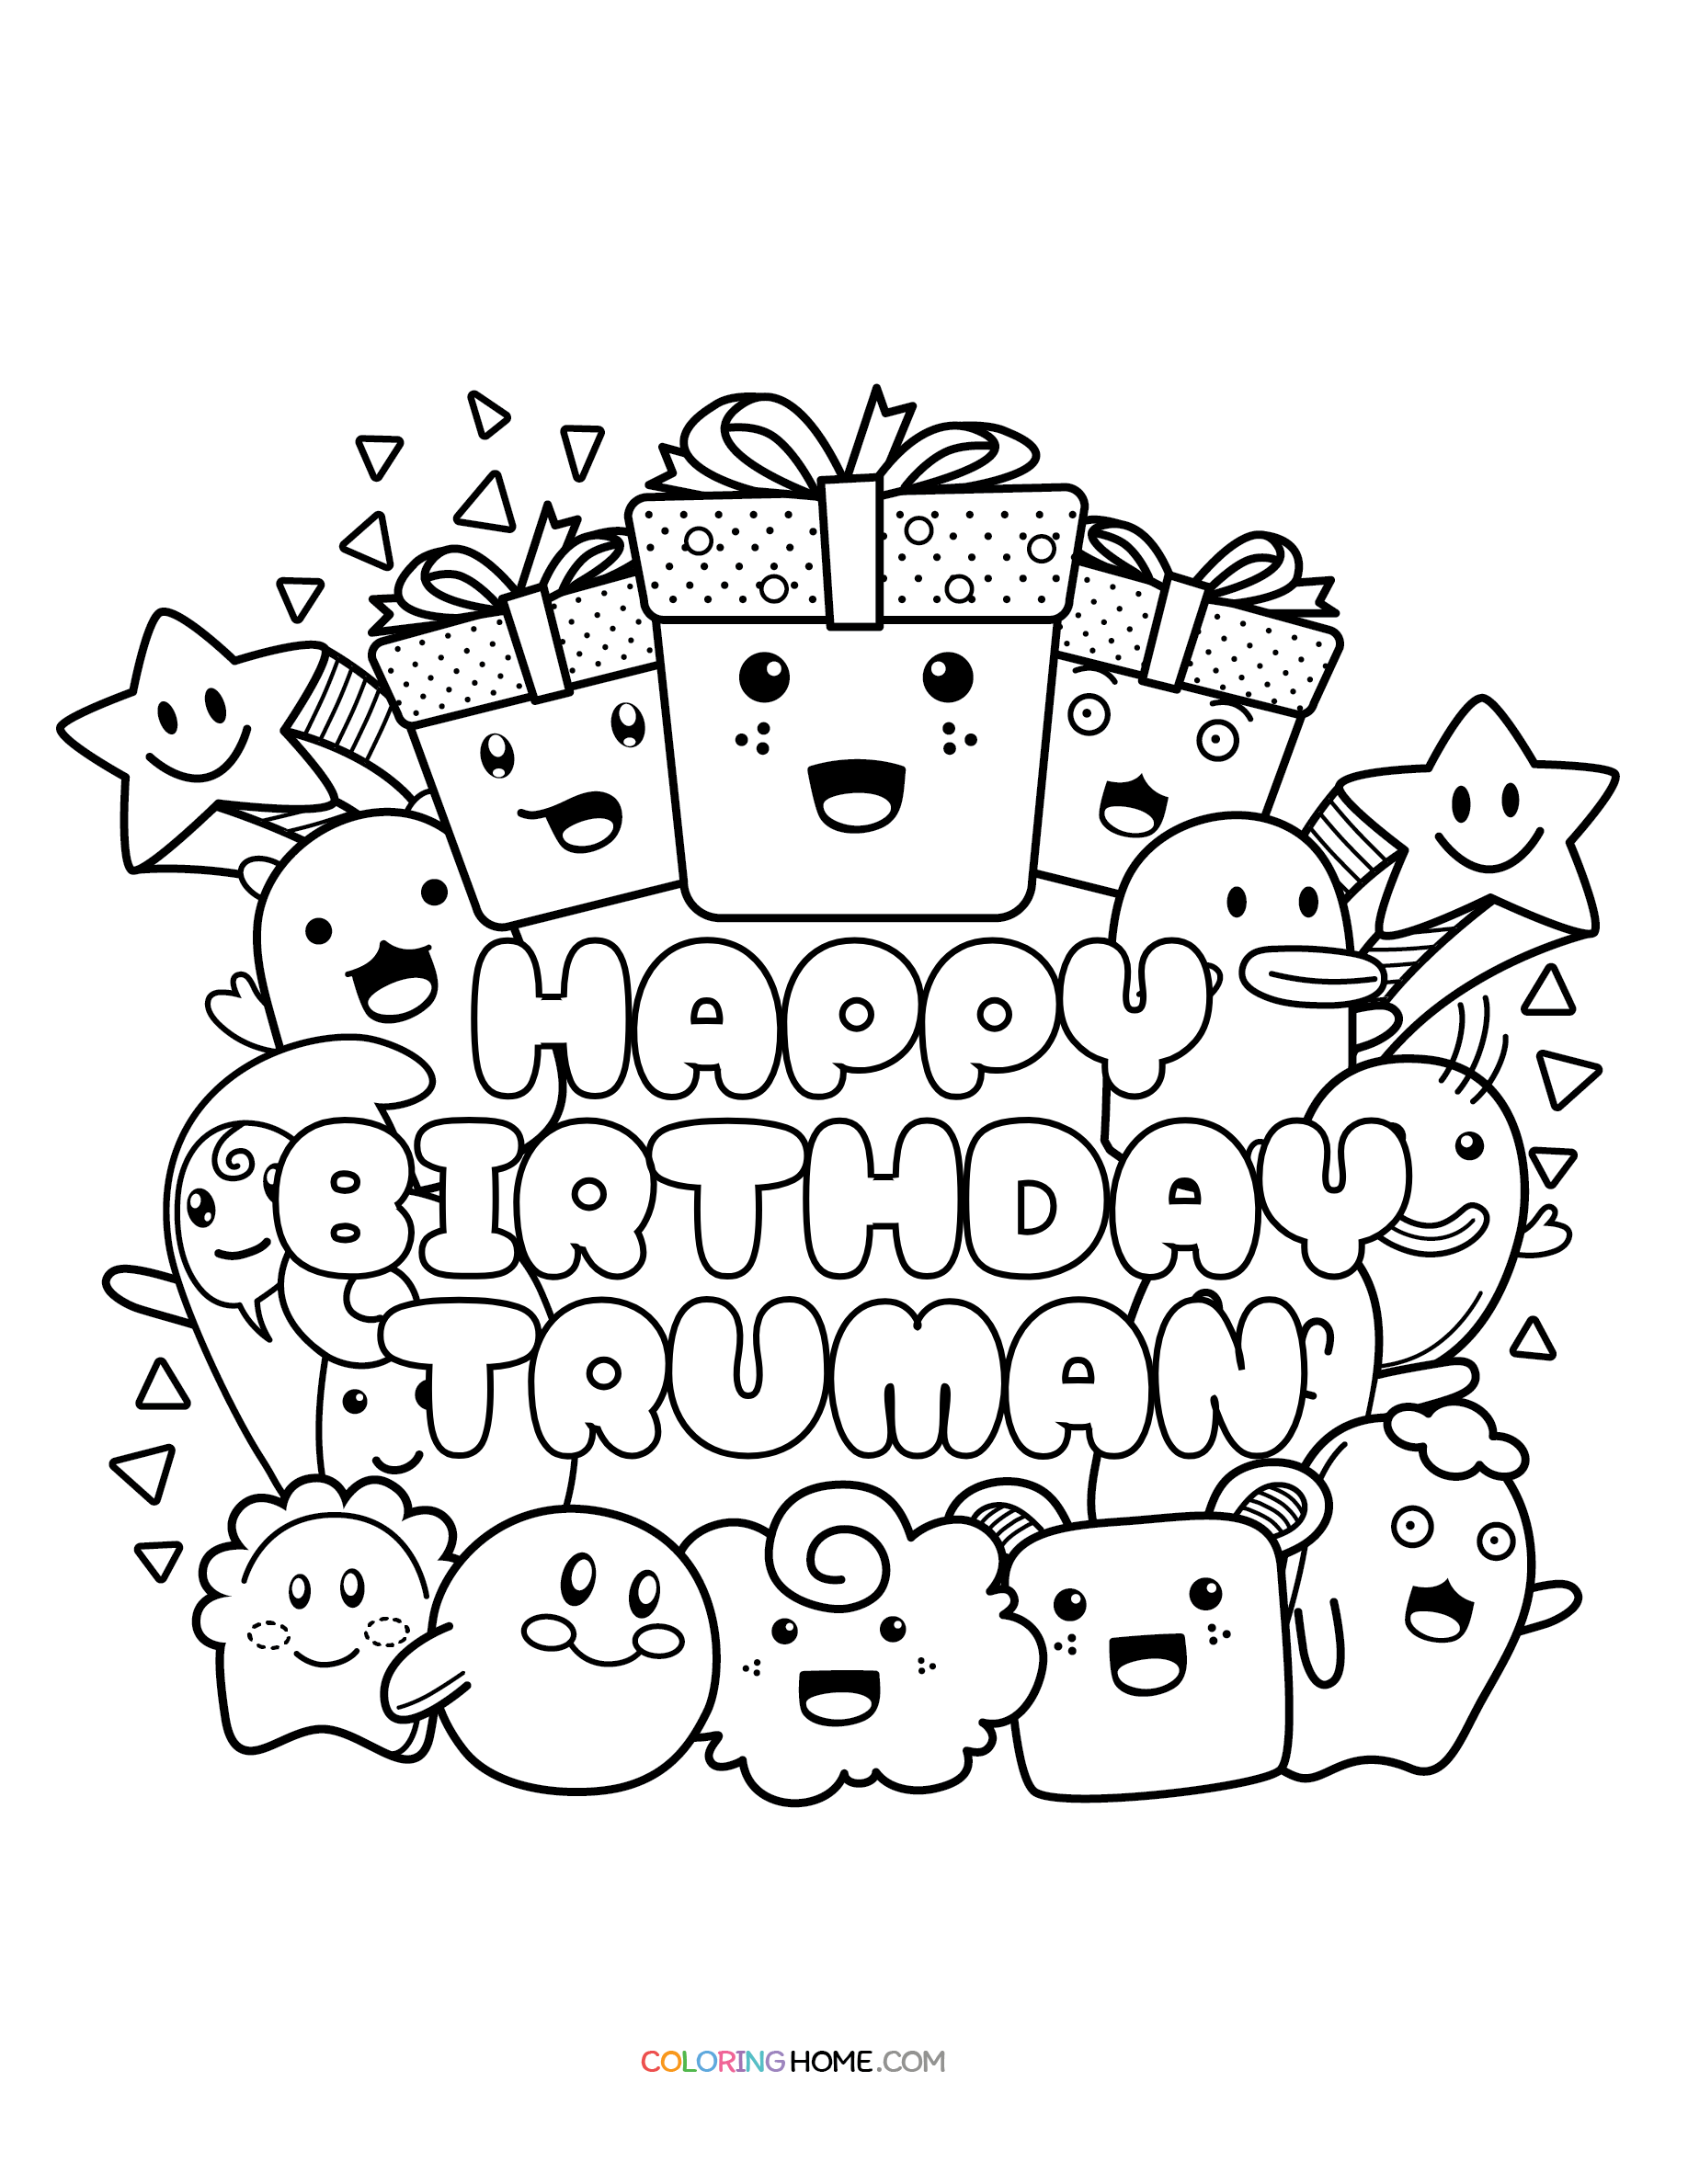 Happy Birthday Truman coloring page